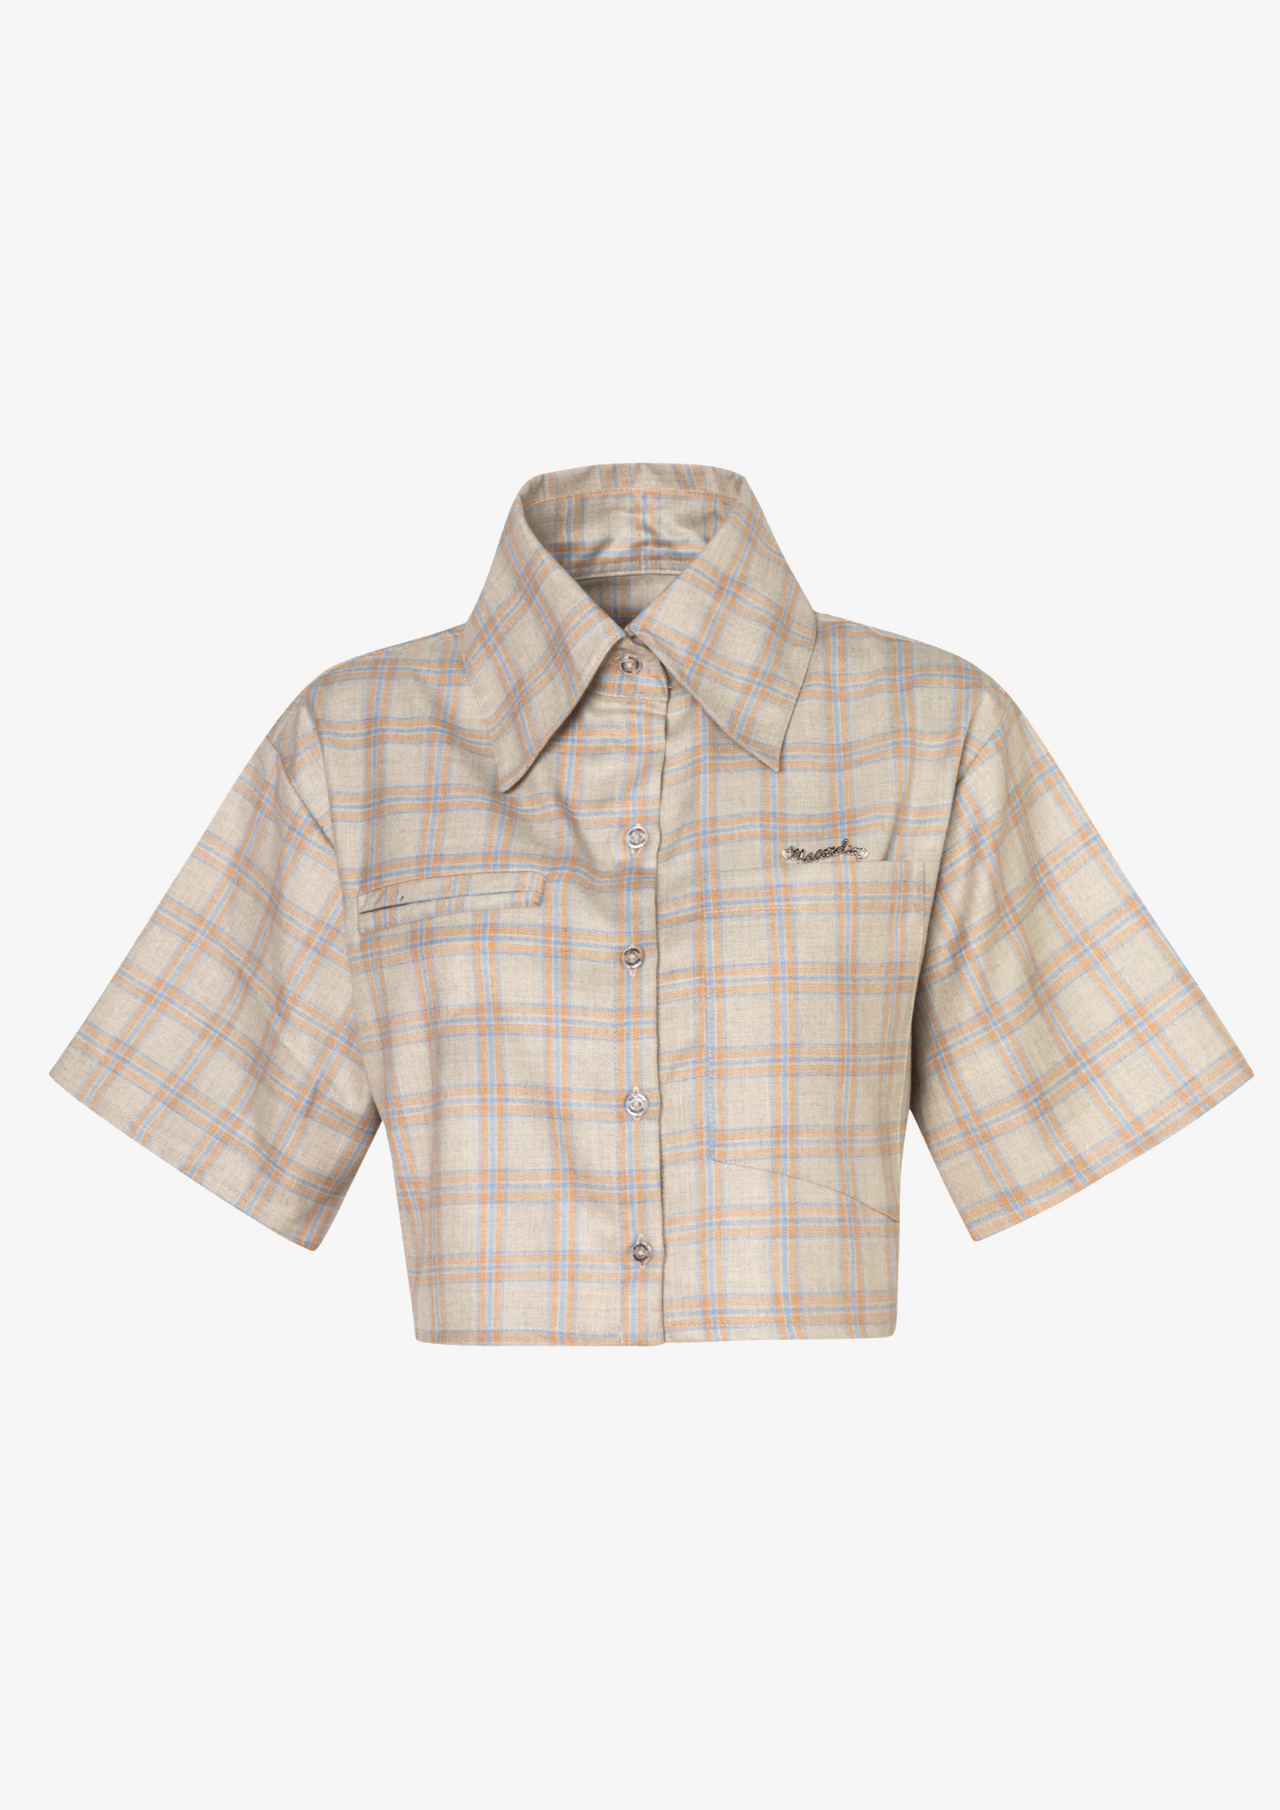 Premium Checkered Pattern Shirt